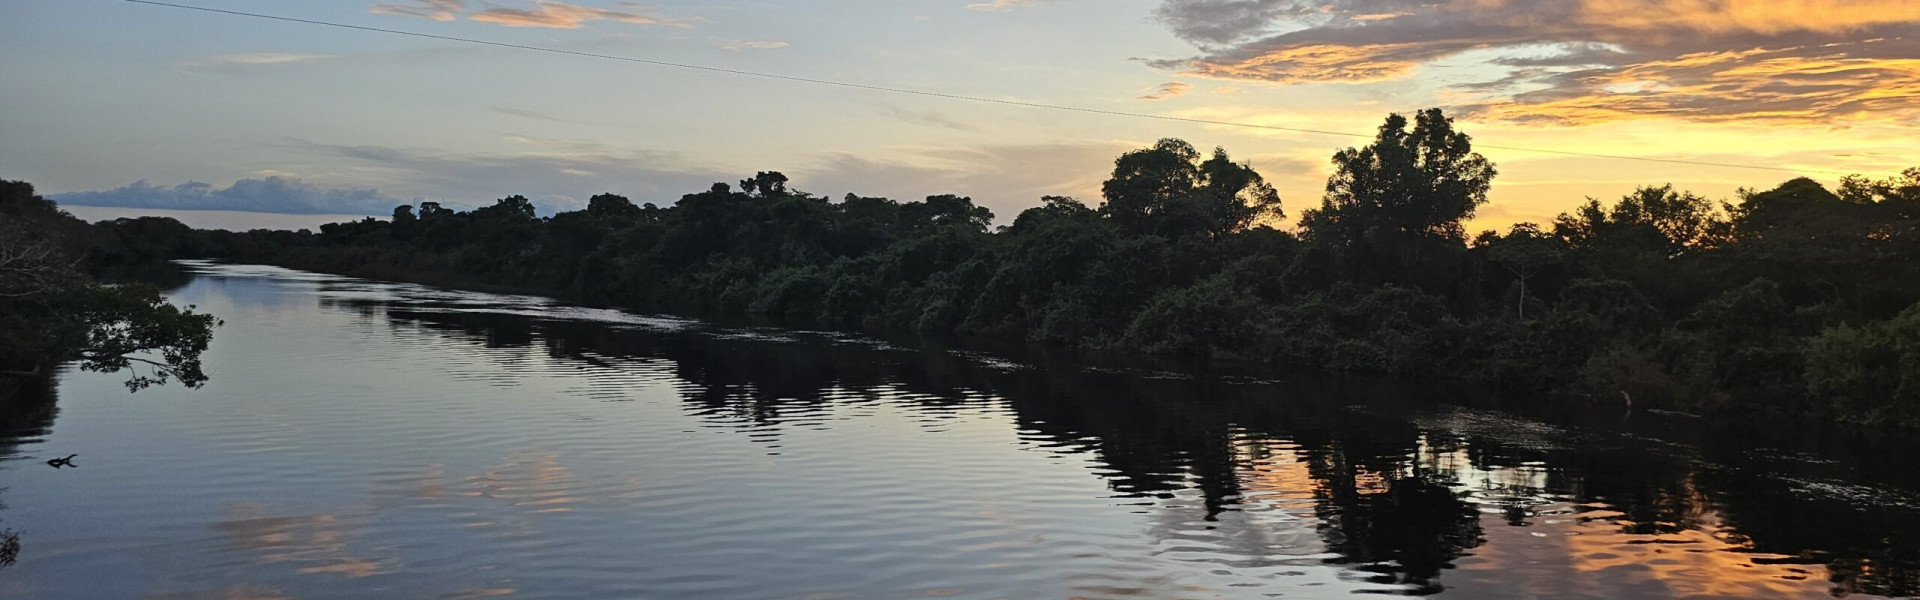 Tecnologia aliada à preservação: projeto pretende monitorar a vida dos peixes do Rio Araguaia